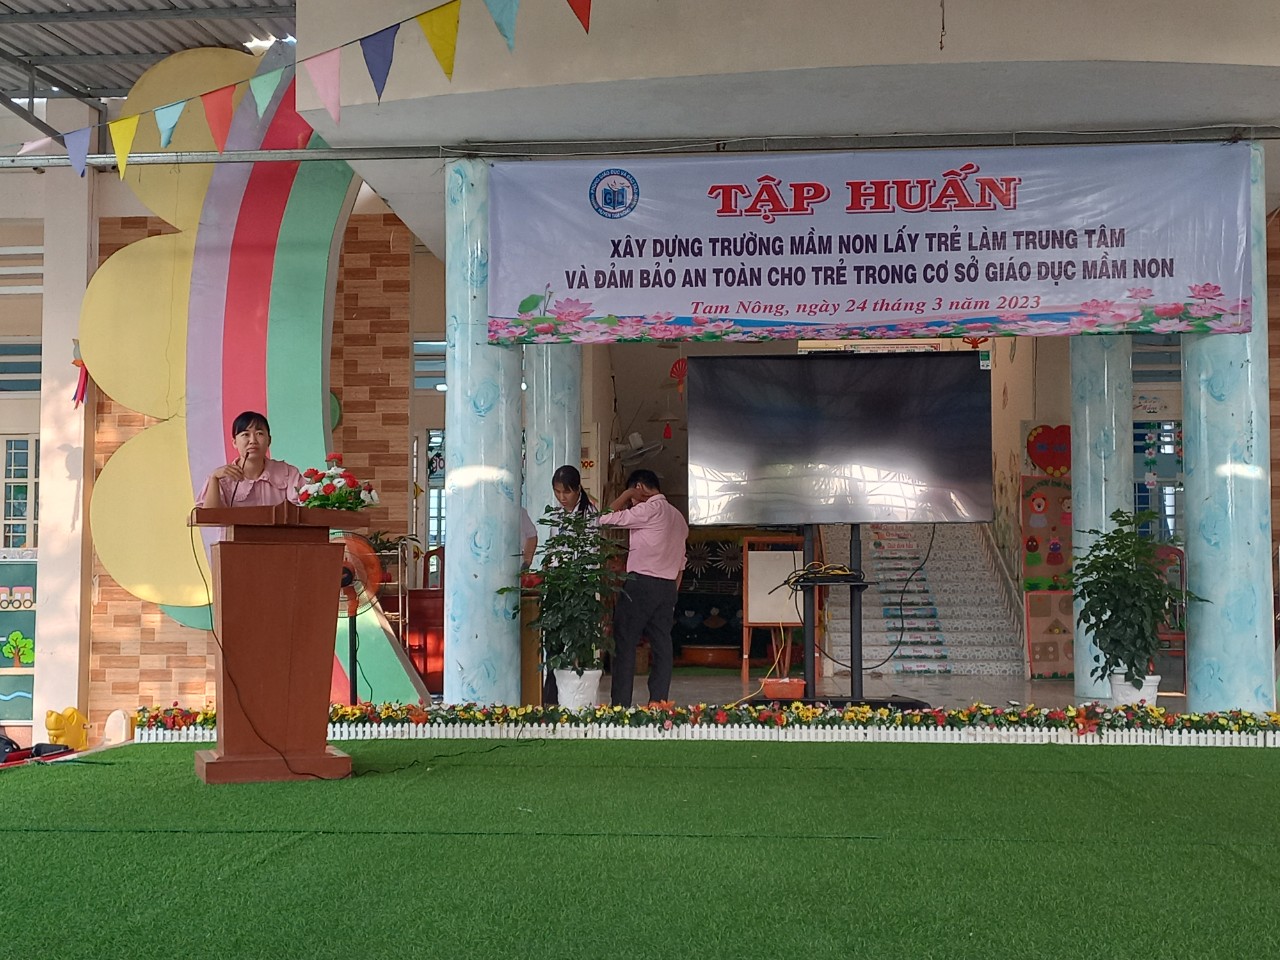 Bà Nguyễn Xuân Đào – Chuyên viên phòng GDĐT triển khai nội dung về hướng dẫn  “xây dựng trường mầm non lấy trẻ làm trung tâm”